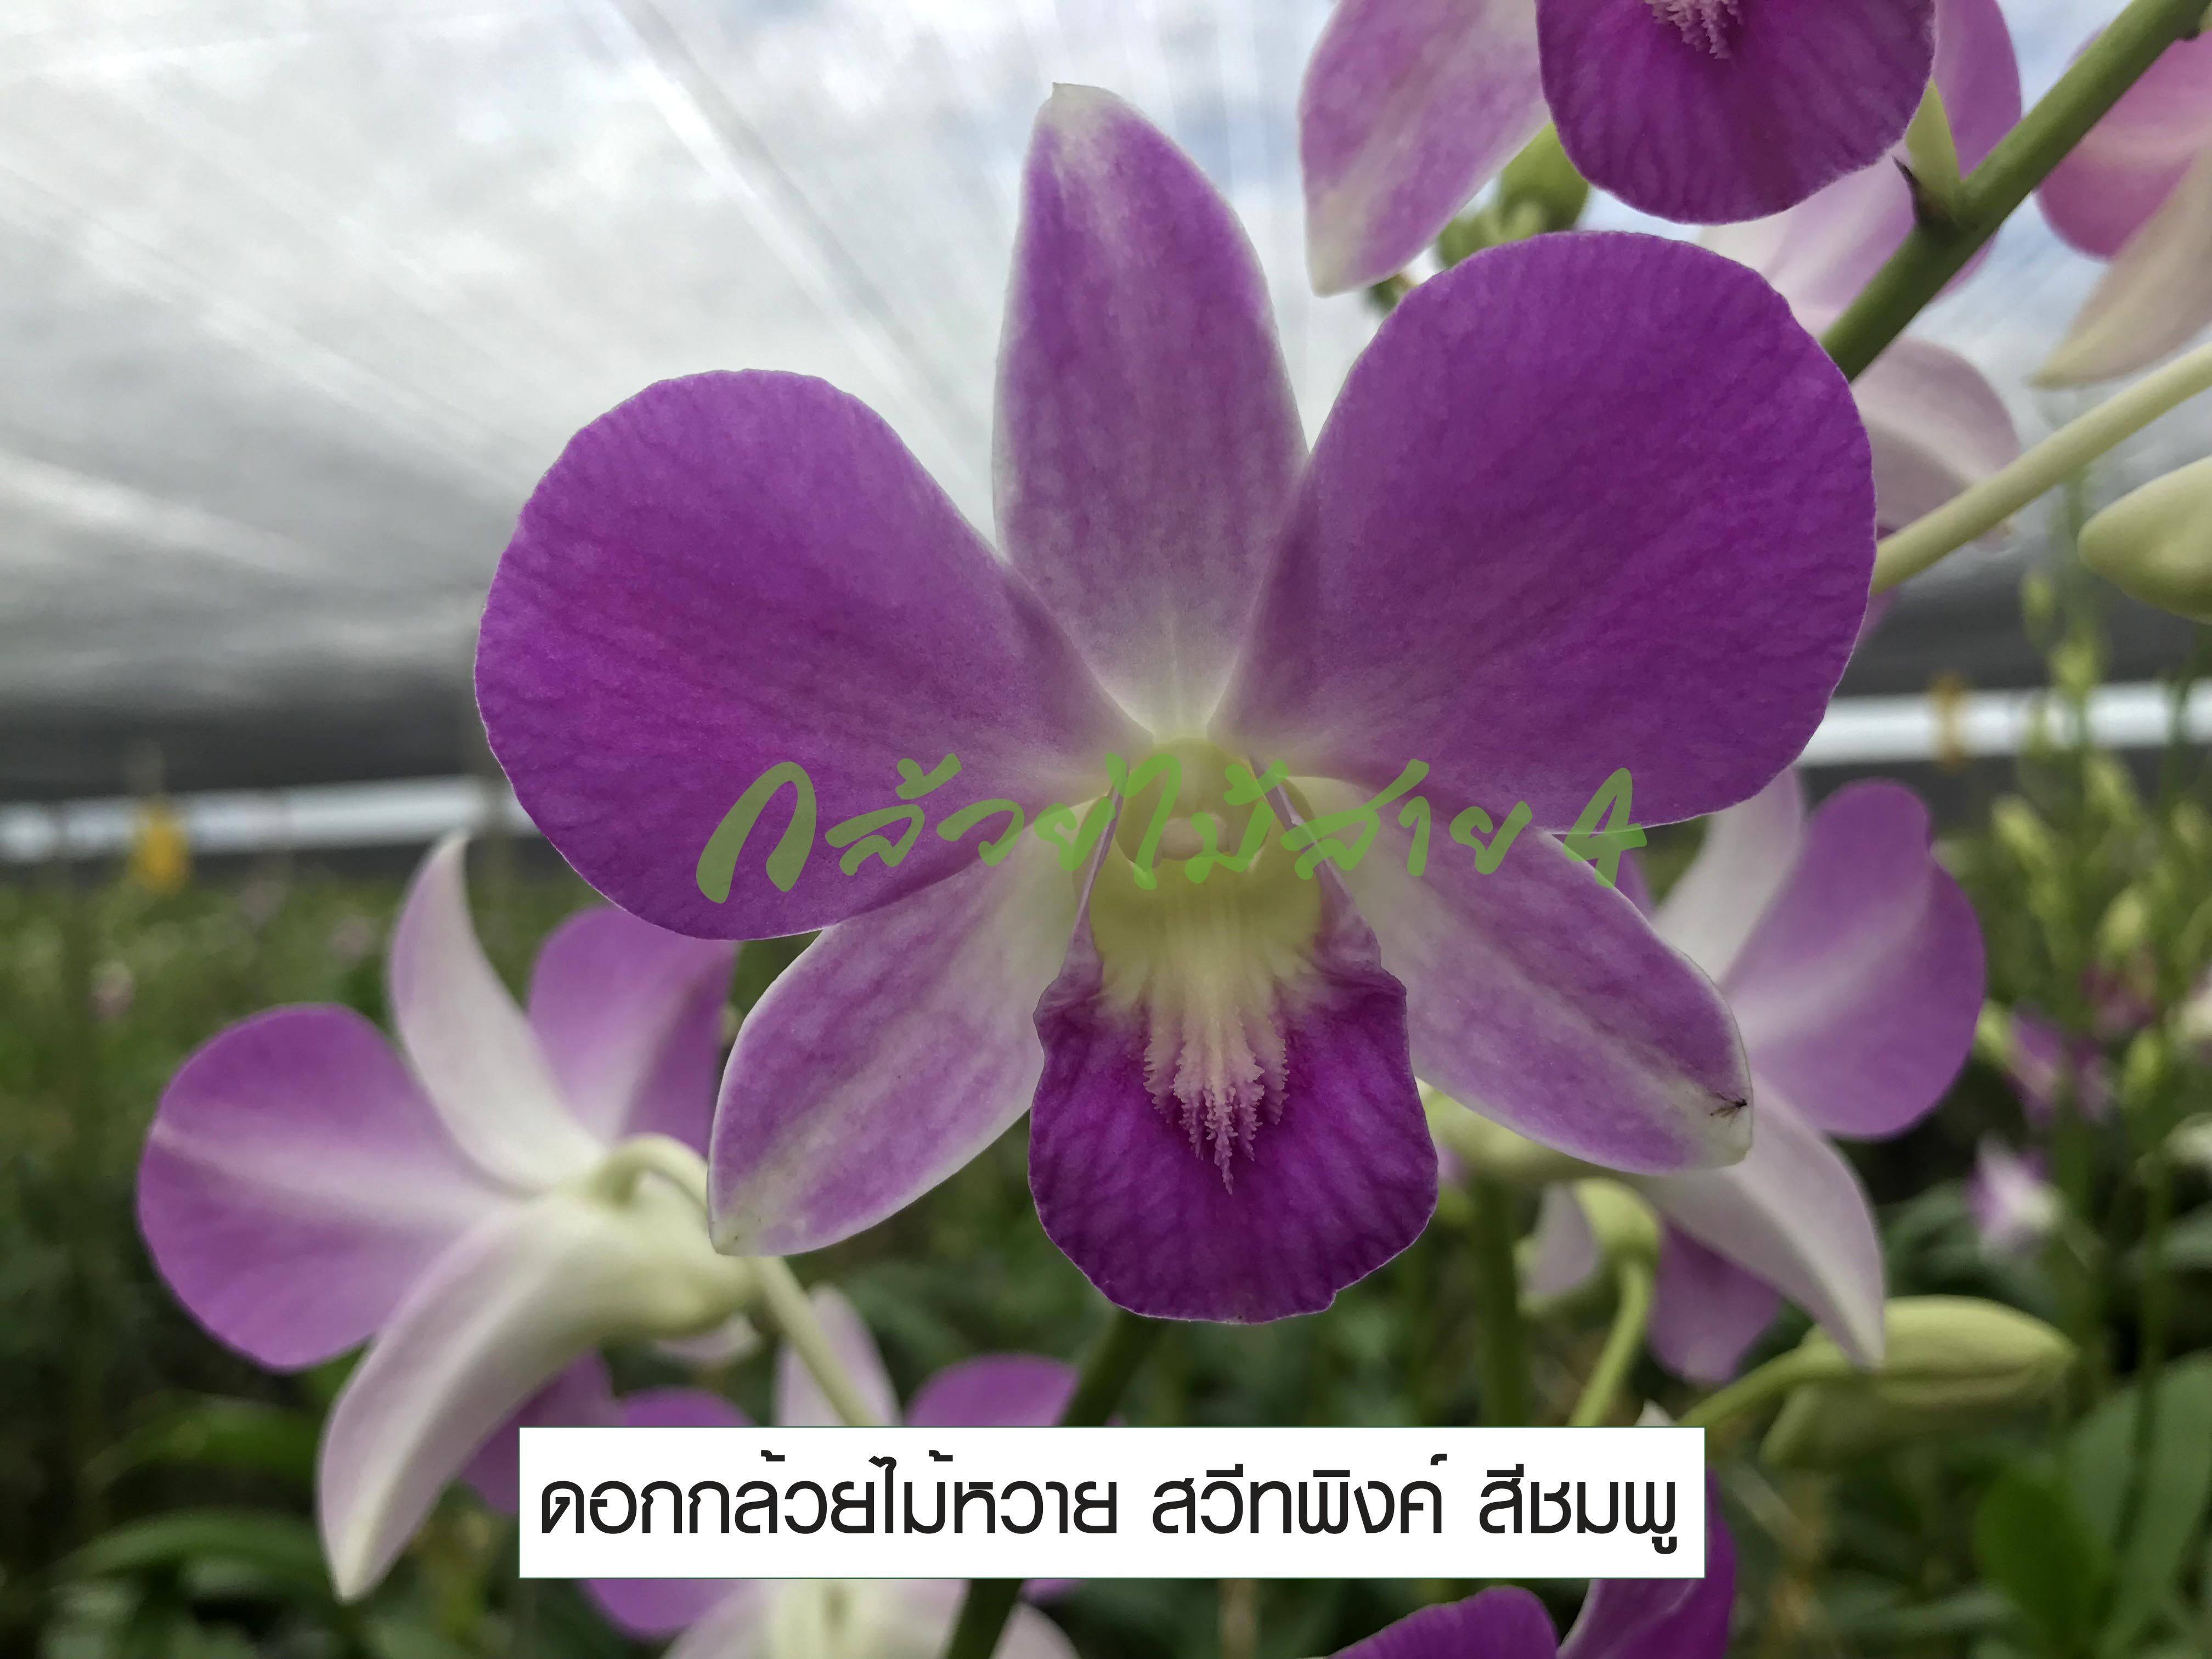 กล้วยไม้สกุลหวาย สวีทพิงค์ กระถาง 3.5 นิ้ว อายุ 1 ปี (Dendrobium Sweet Pink Orchid Plant)